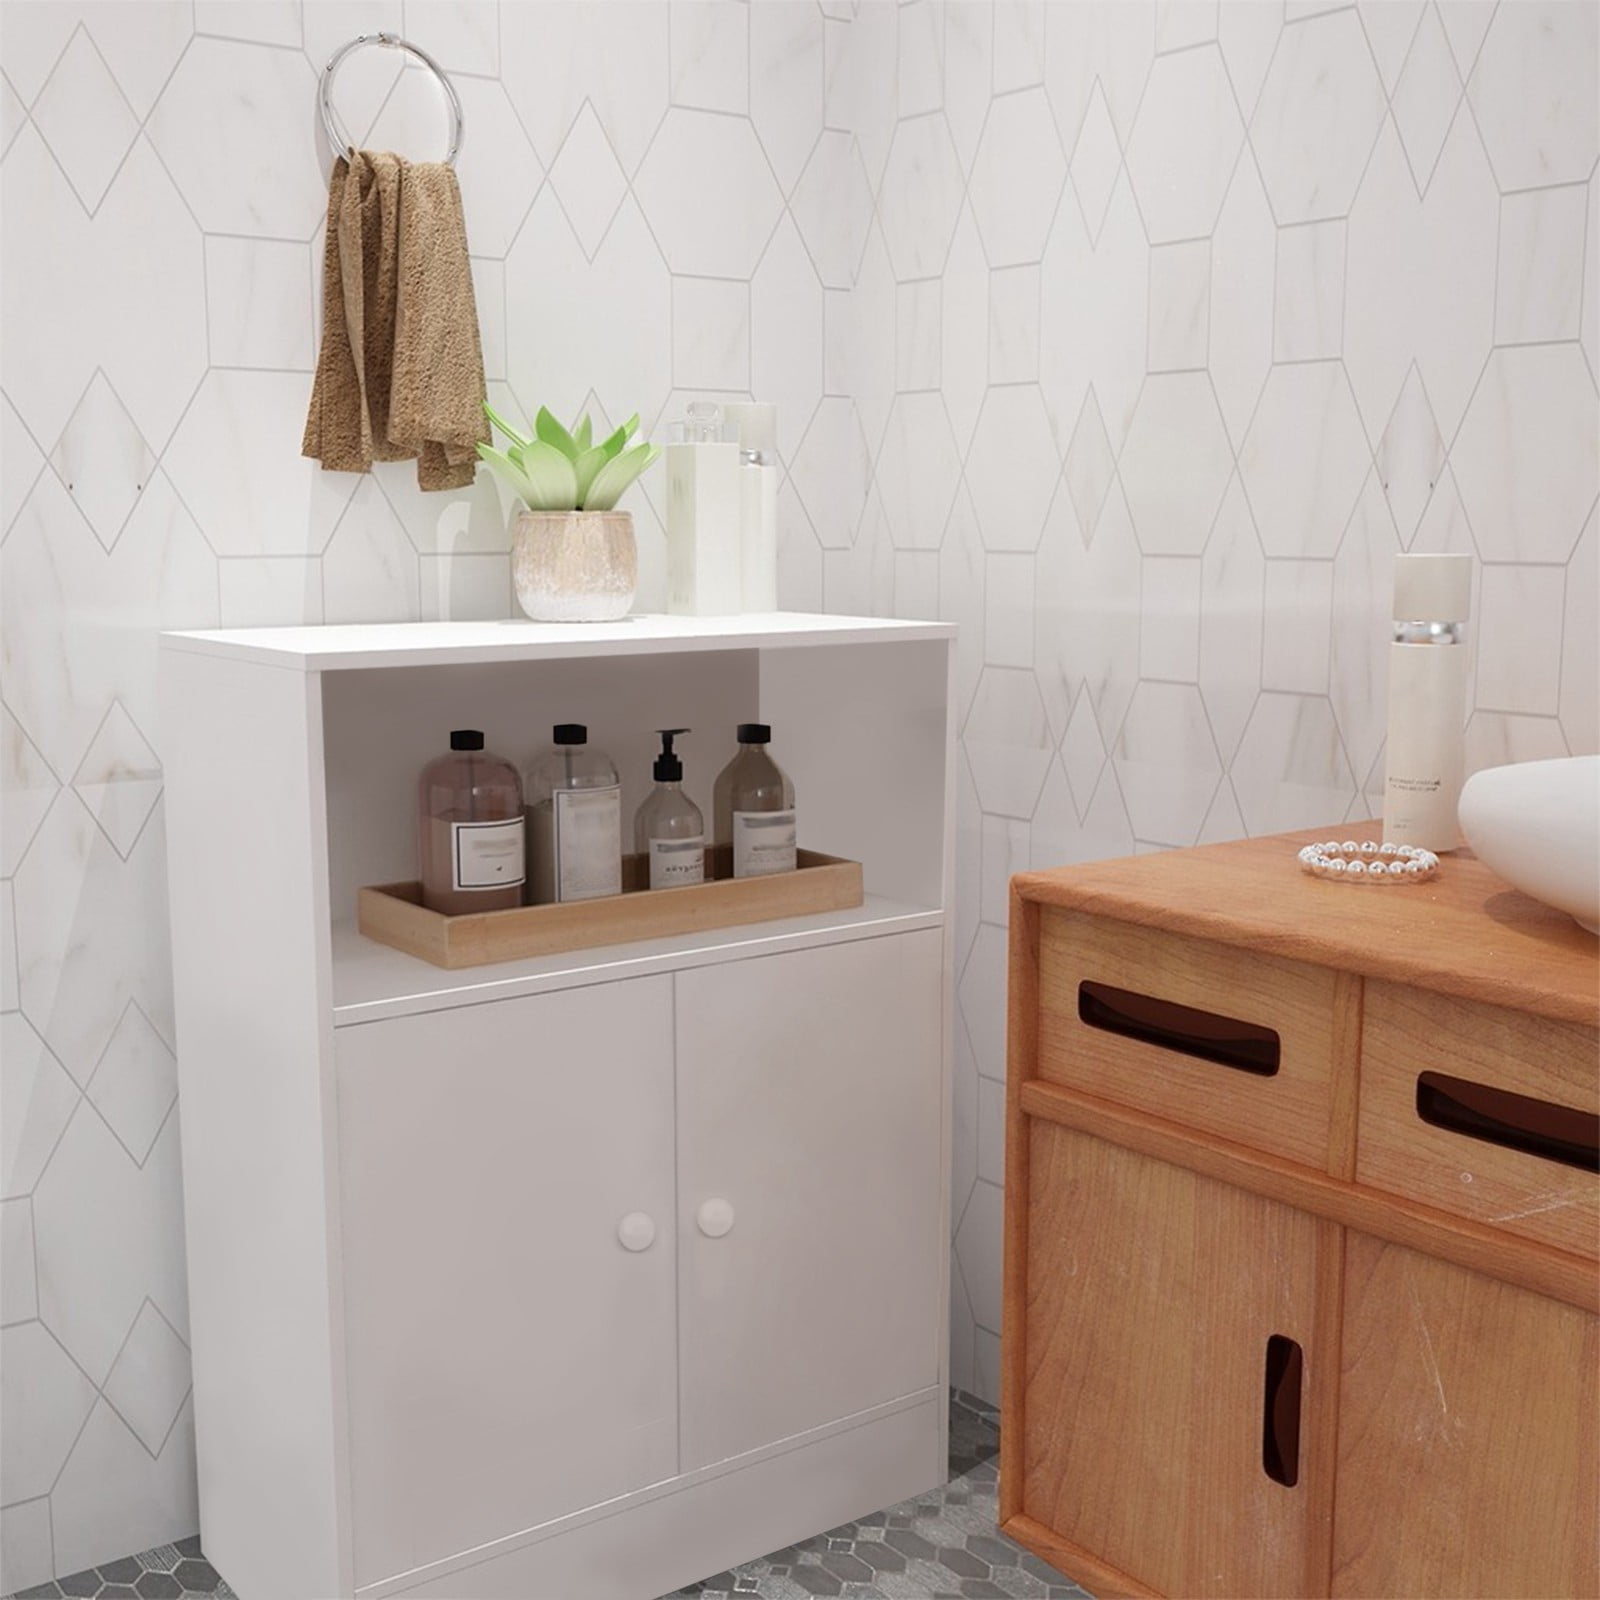 Bathroom Storage Floor Cabinet Free Standing With Two-Door Storage Mount Cabinet 